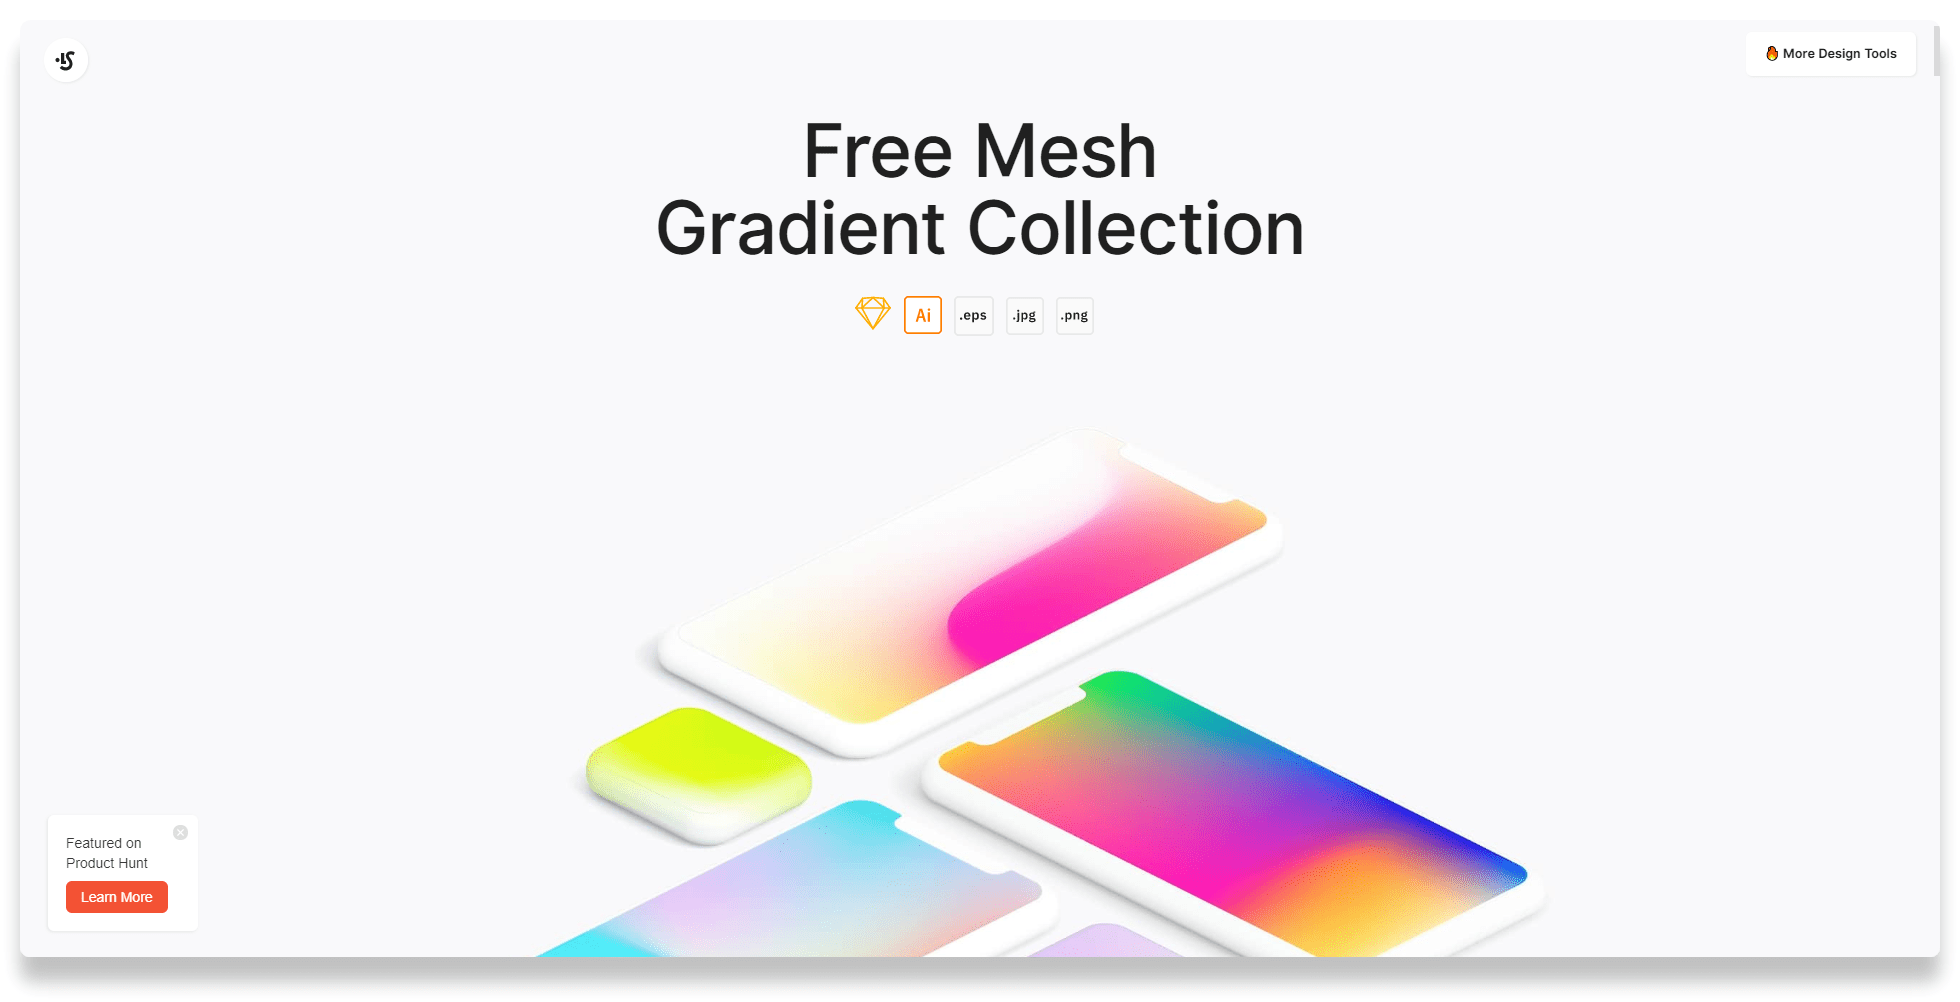 ابزار Free Mesh Gradient Collection برای انتخاب رنگ